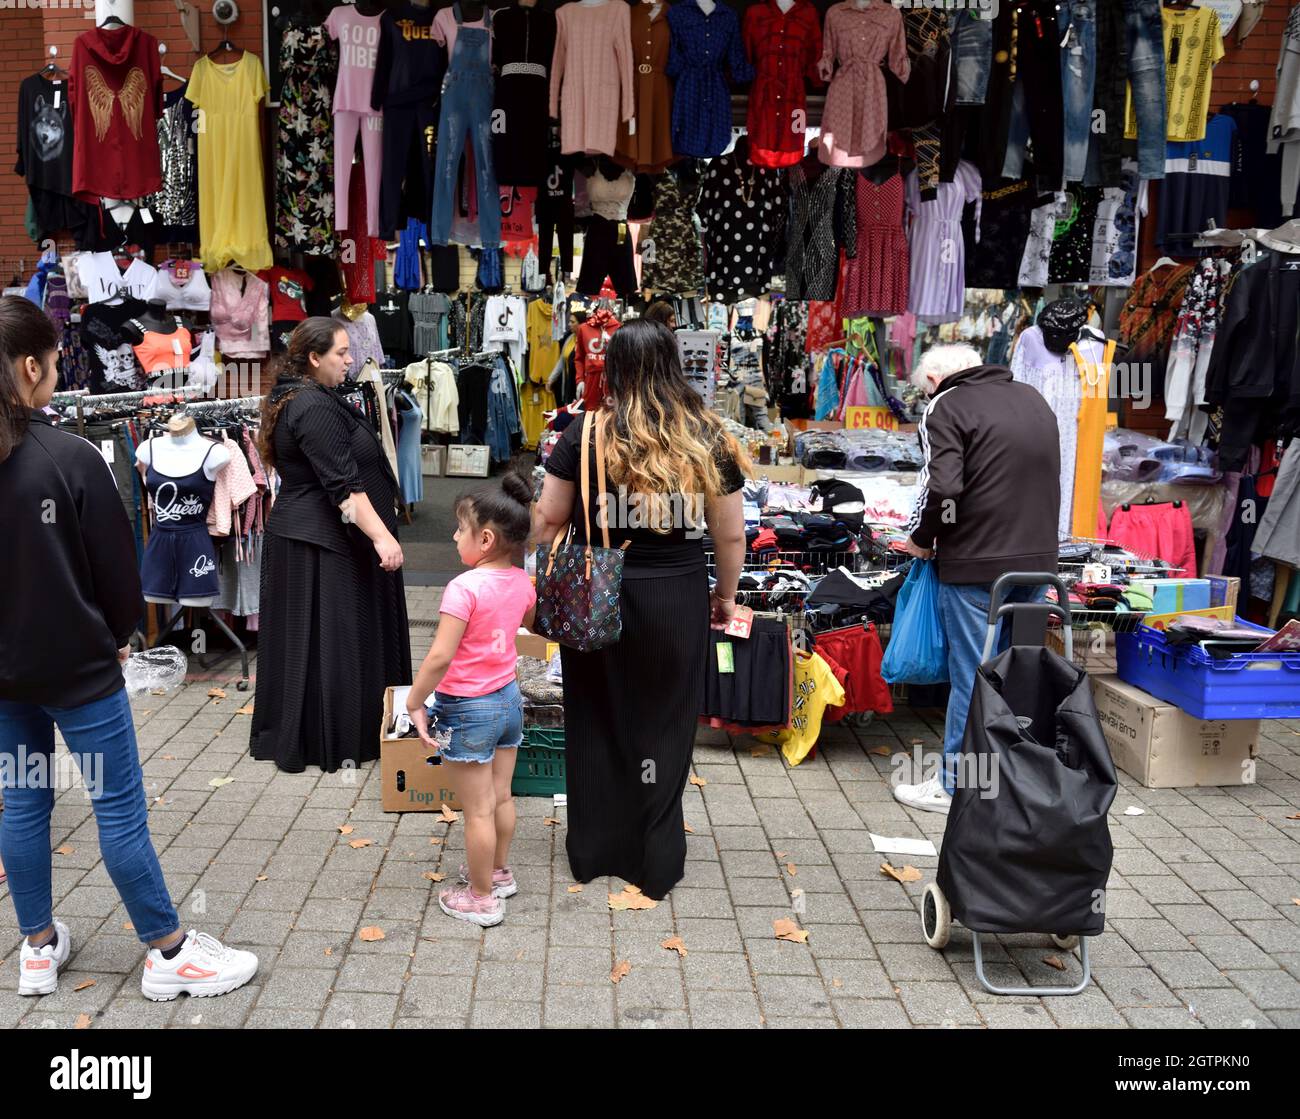 Les acheteurs à la recherche de vêtements au Birmingham Bullring Rag Market, Royaume-Uni Banque D'Images